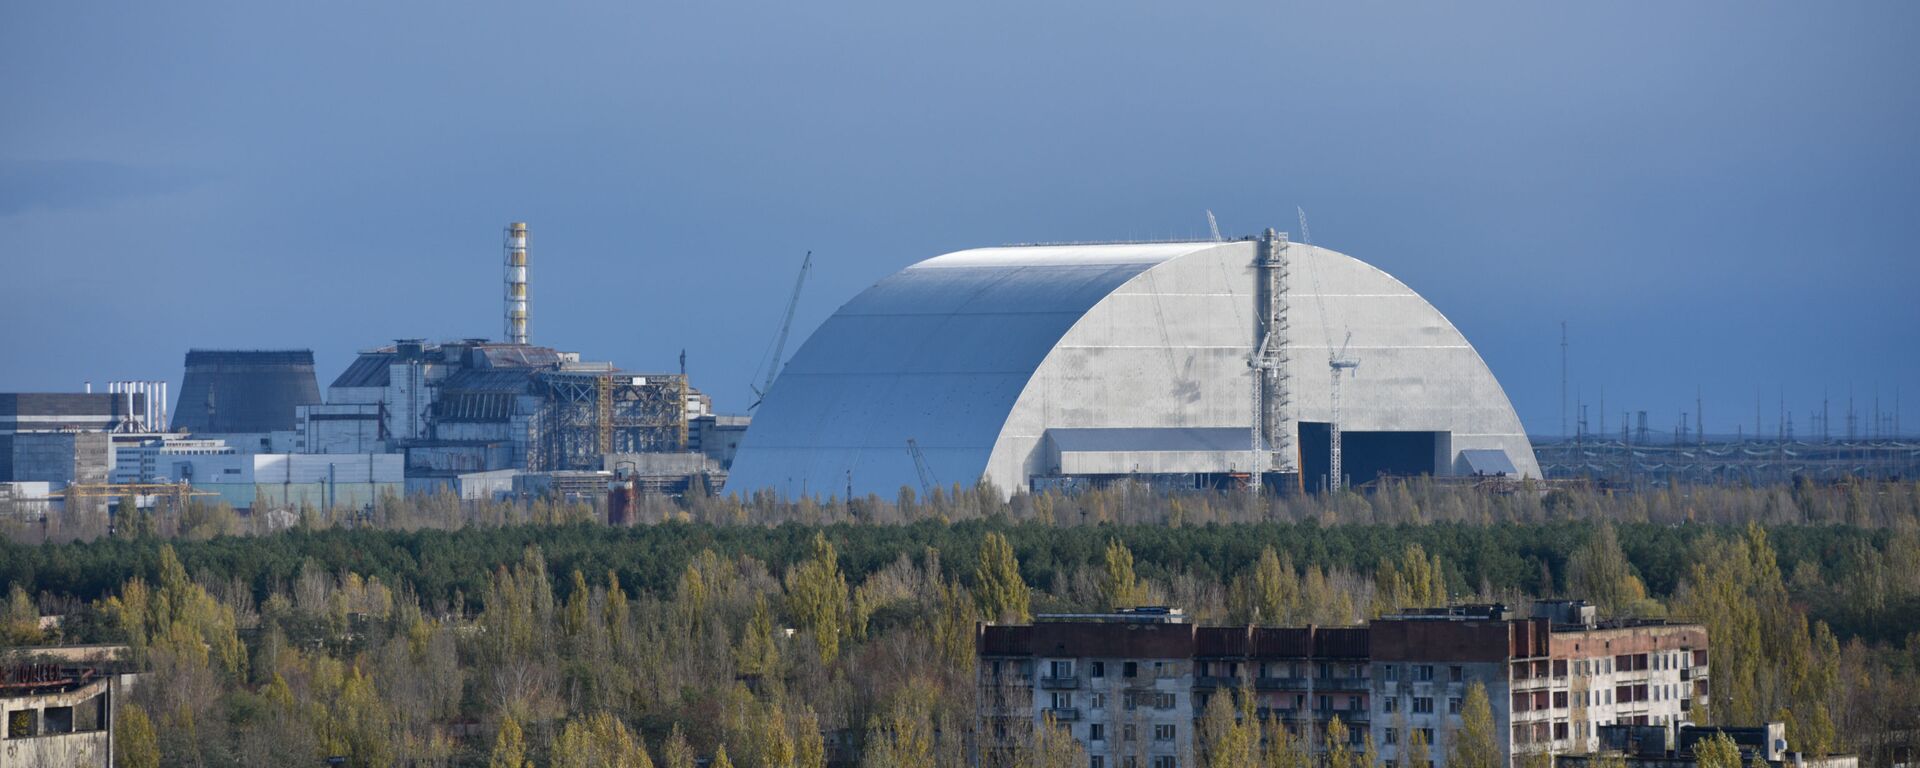 Вид на новый безопасный конфайнмент и саркофаг на 4-м энергоблоке Чернобыльской атомной электростанции из города Припять - Sputnik Молдова, 1920, 26.04.2020